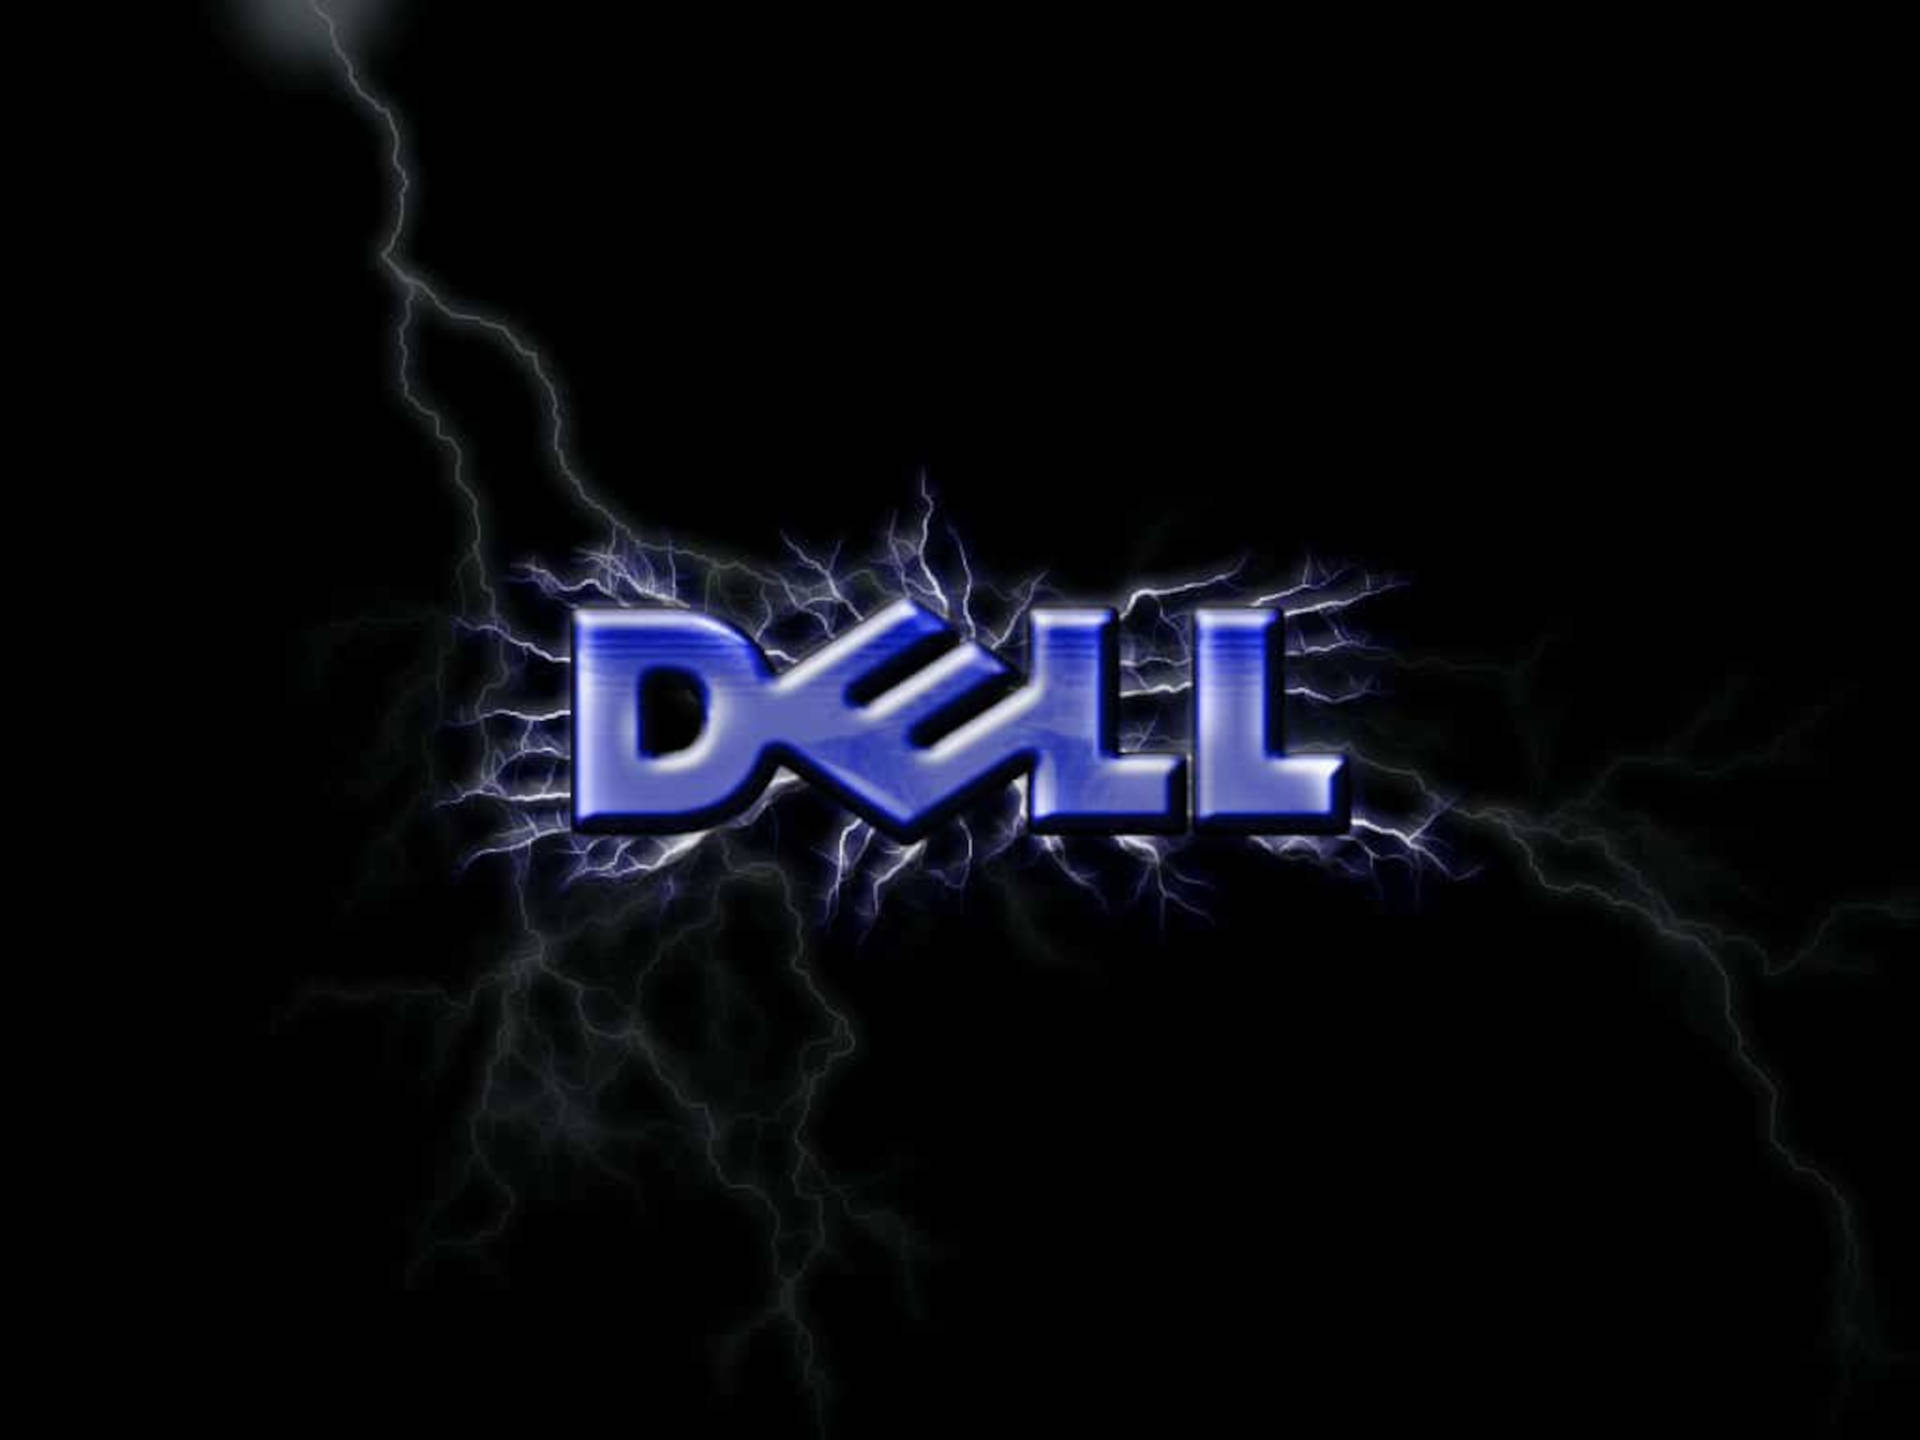 90s Inspired Dell Logo In 4k